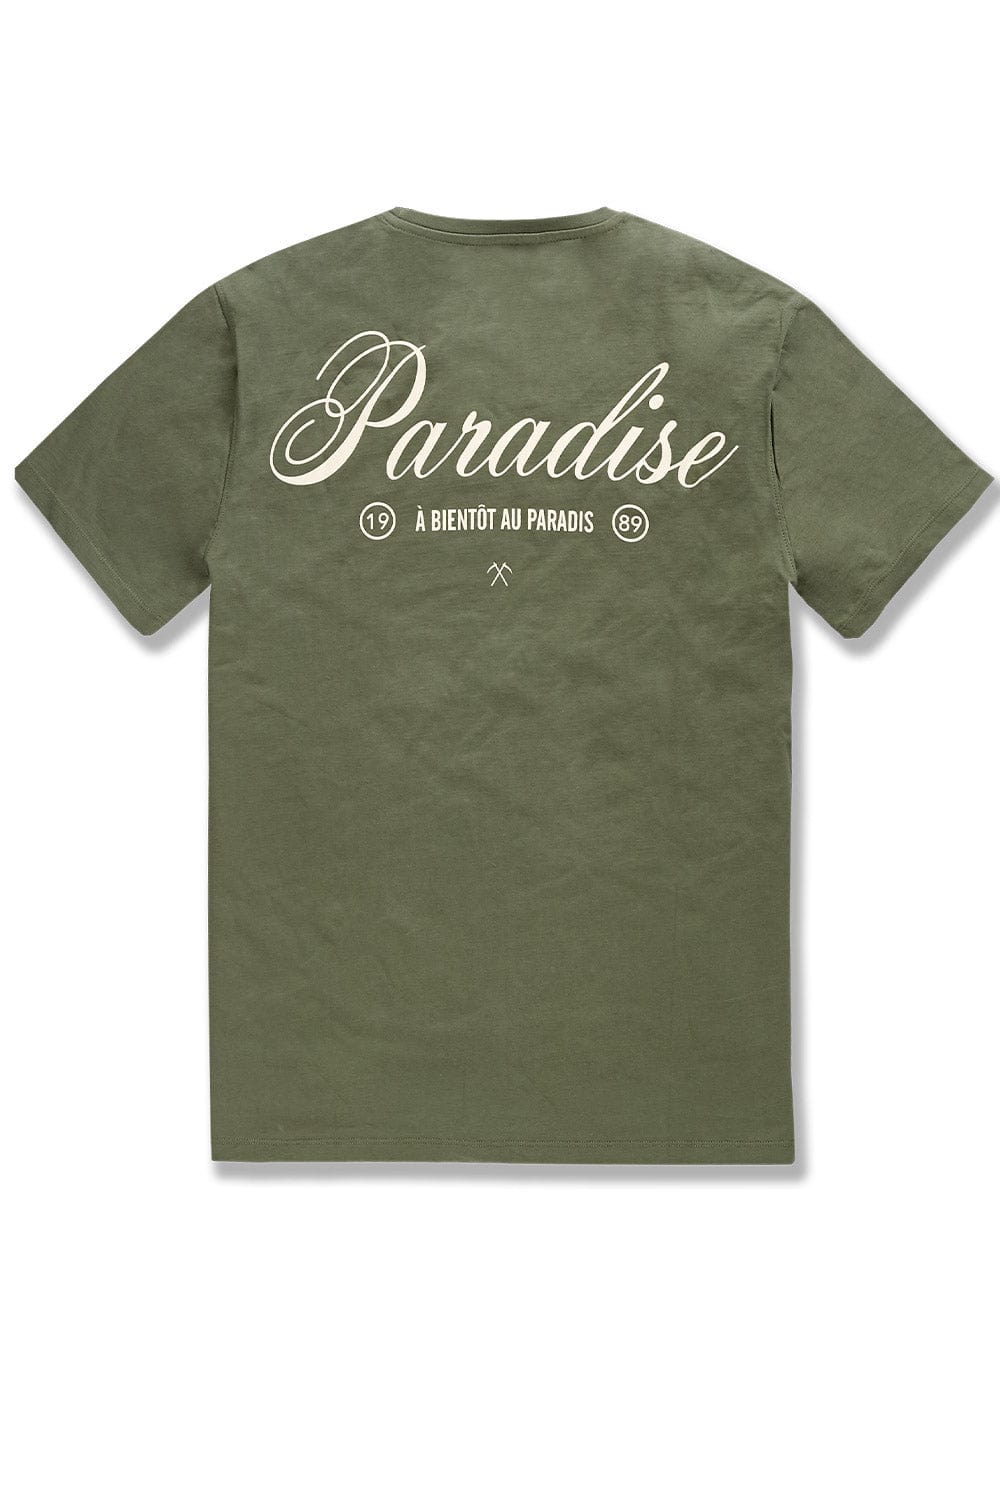 BB Paradise T-Shirt (Olive)